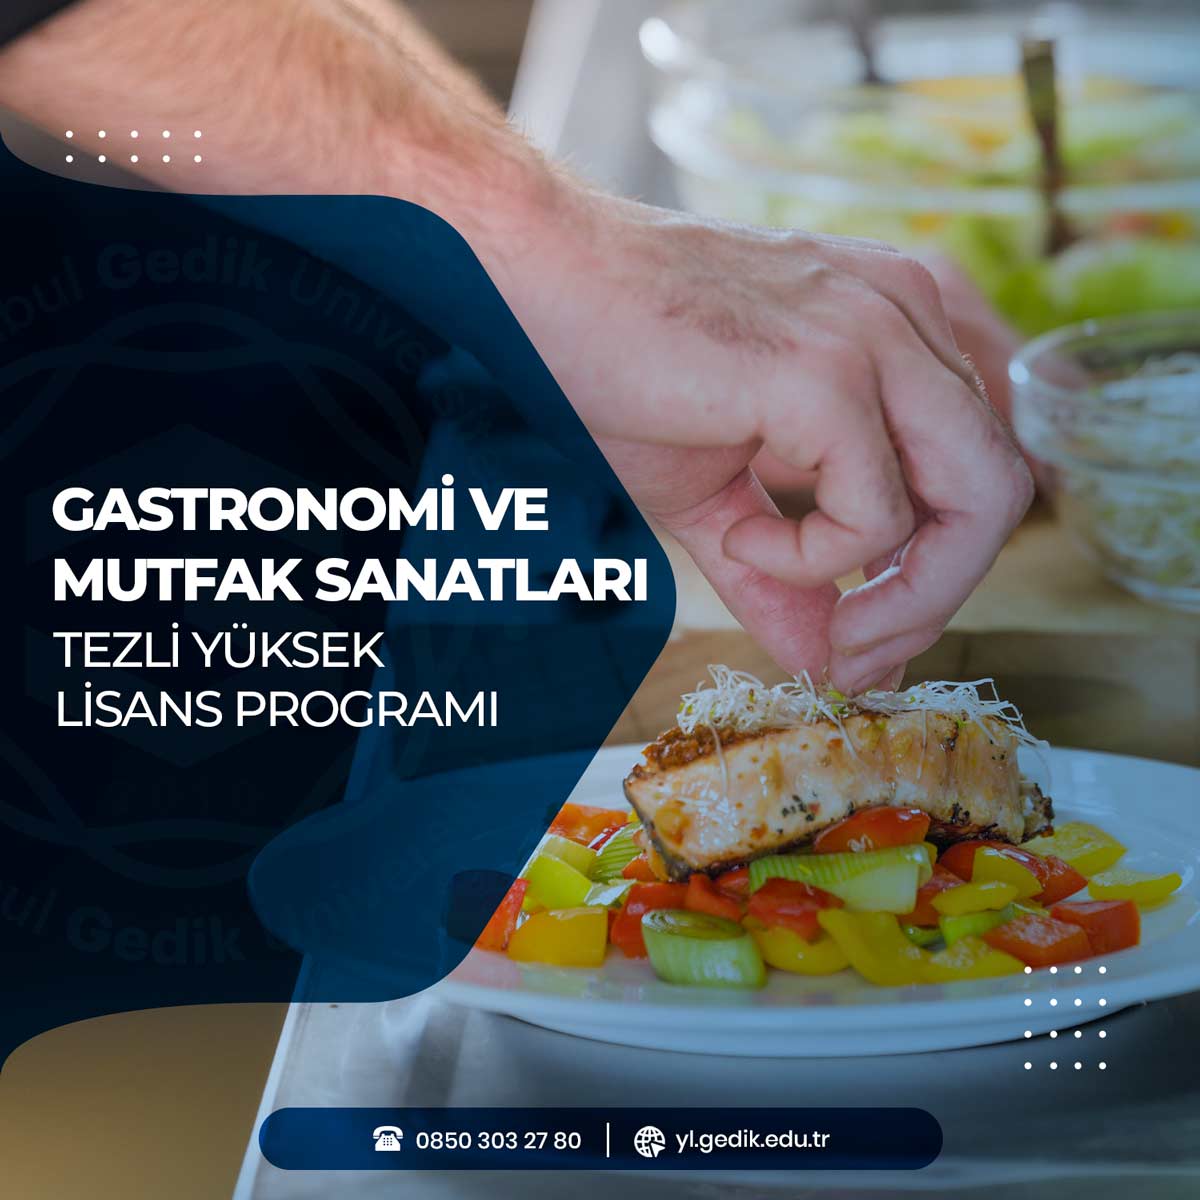 Gastronomi ve Mutfak Sanatları Tezli Yüksek Lisans Programı